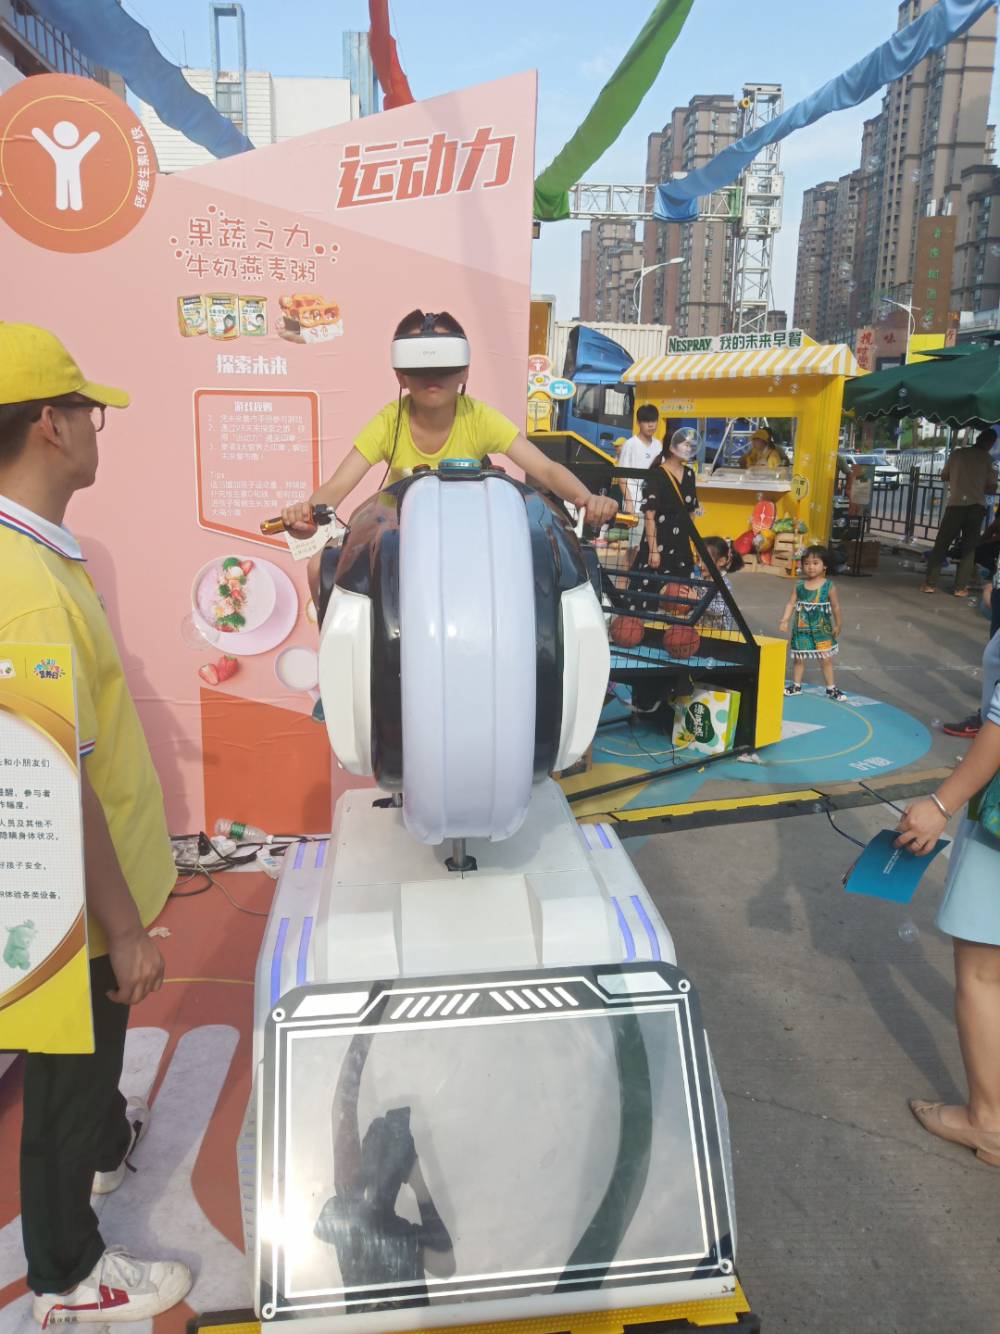 南京 VR摩托车出租 亲子互动设备出租 虚拟现实